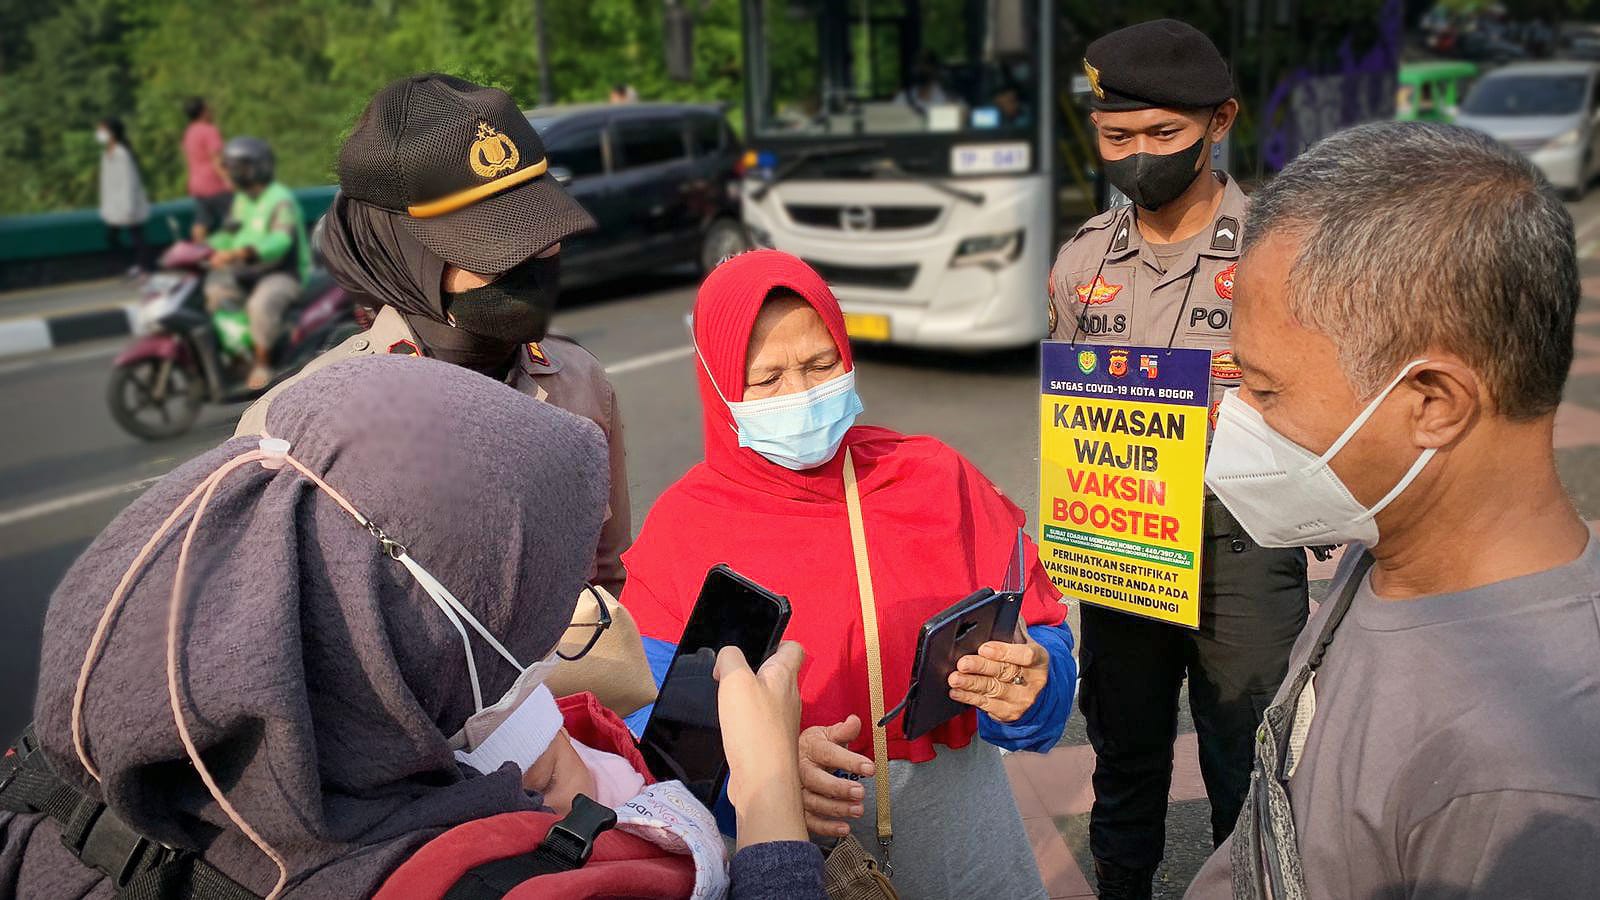 Ayo Booster, Ini 3 Lokasi Gerai Vaksin di Kota Bogor, Cukup Bawa KTP